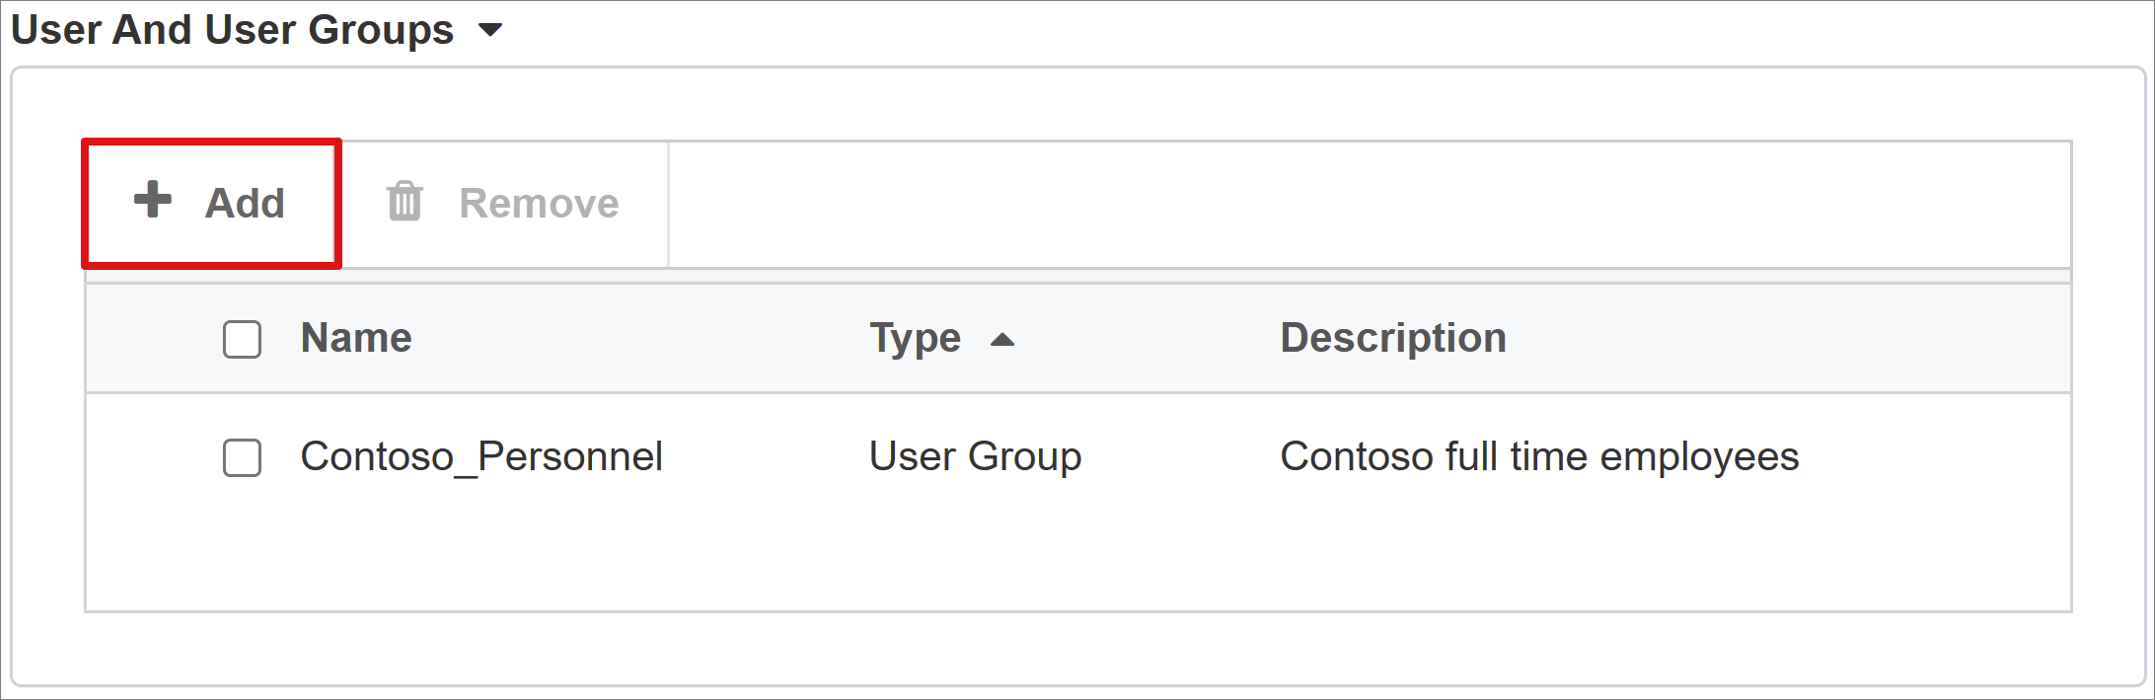 Captura de pantalla de la opción Agregar en Usuario y grupos de usuarios.